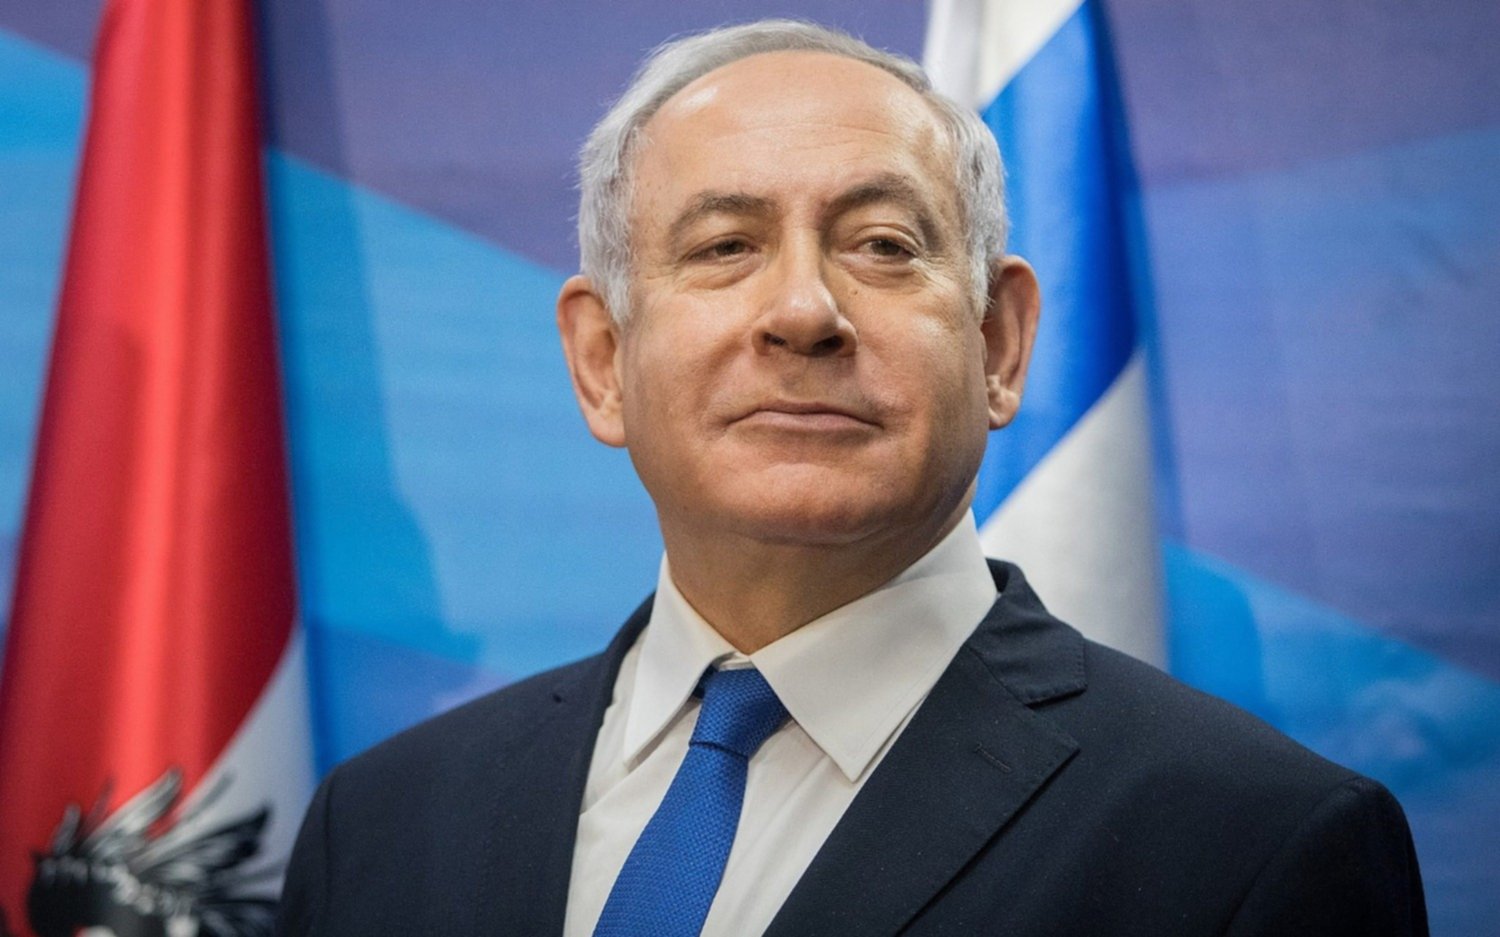 Netanyahu ofrece a su rival formar un "amplio gobierno de unidad" tras el ajustado resultado electoral